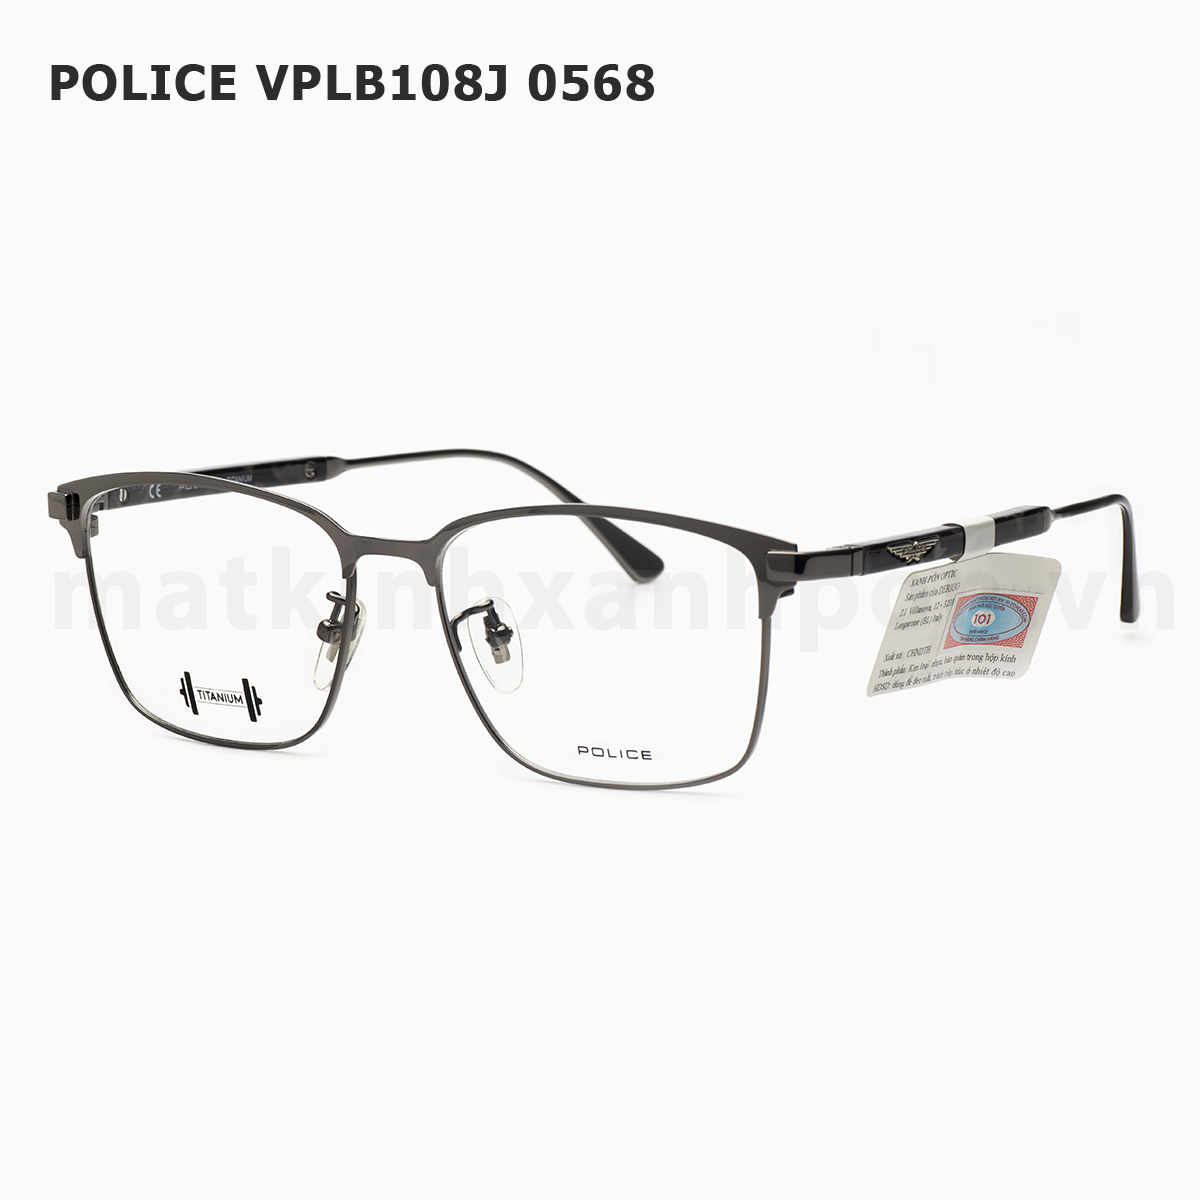 Police VPLB108J 0568